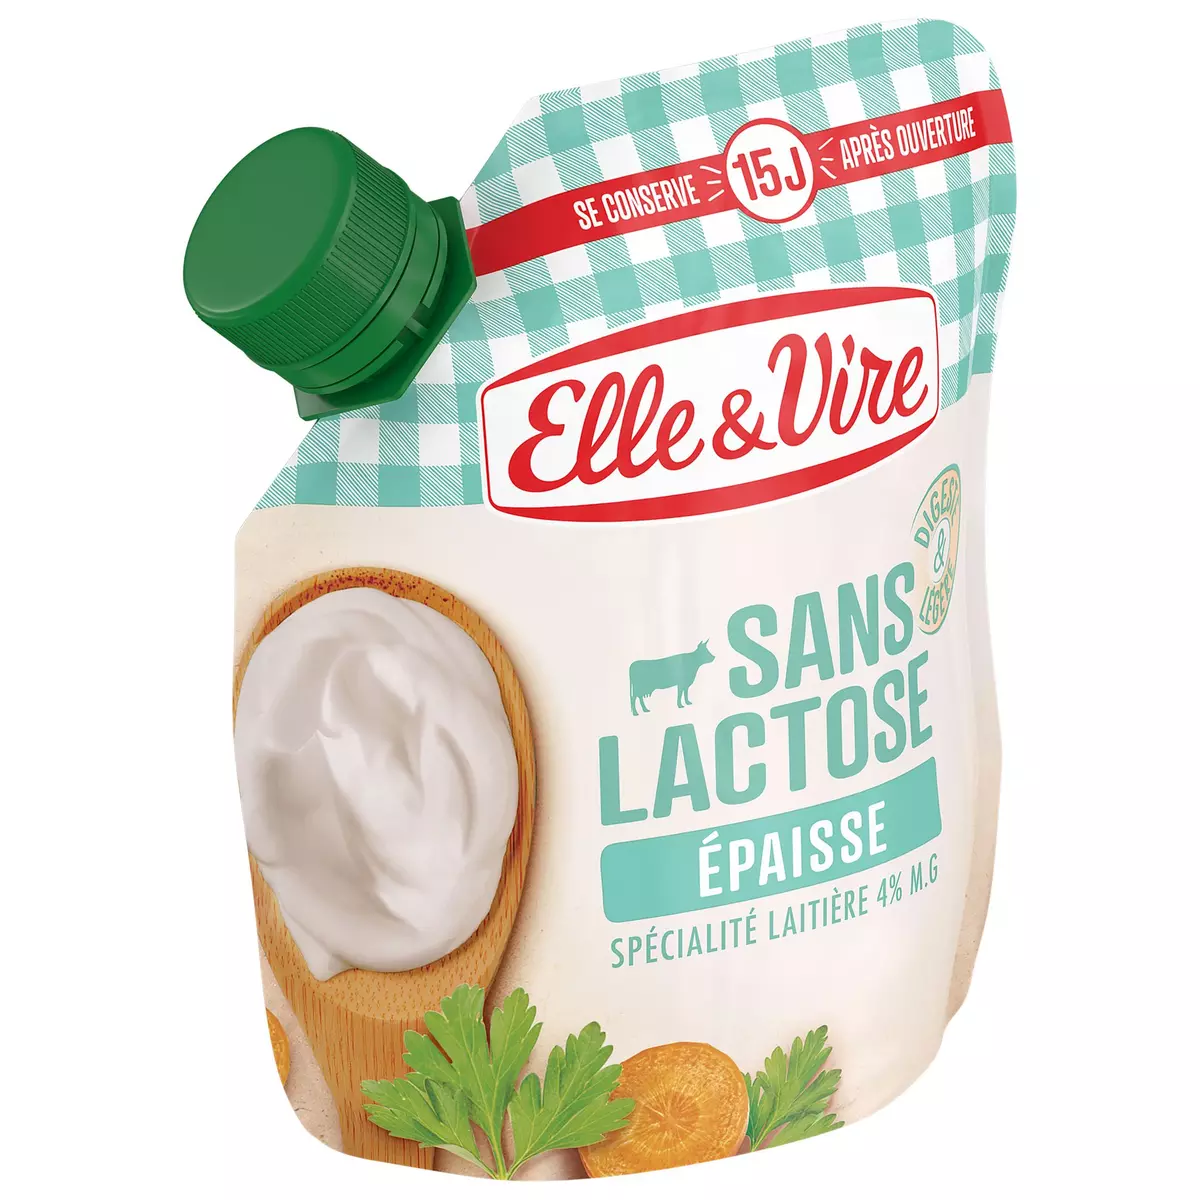 ELLE & VIRE Crème épaisse sans lactose 33cl